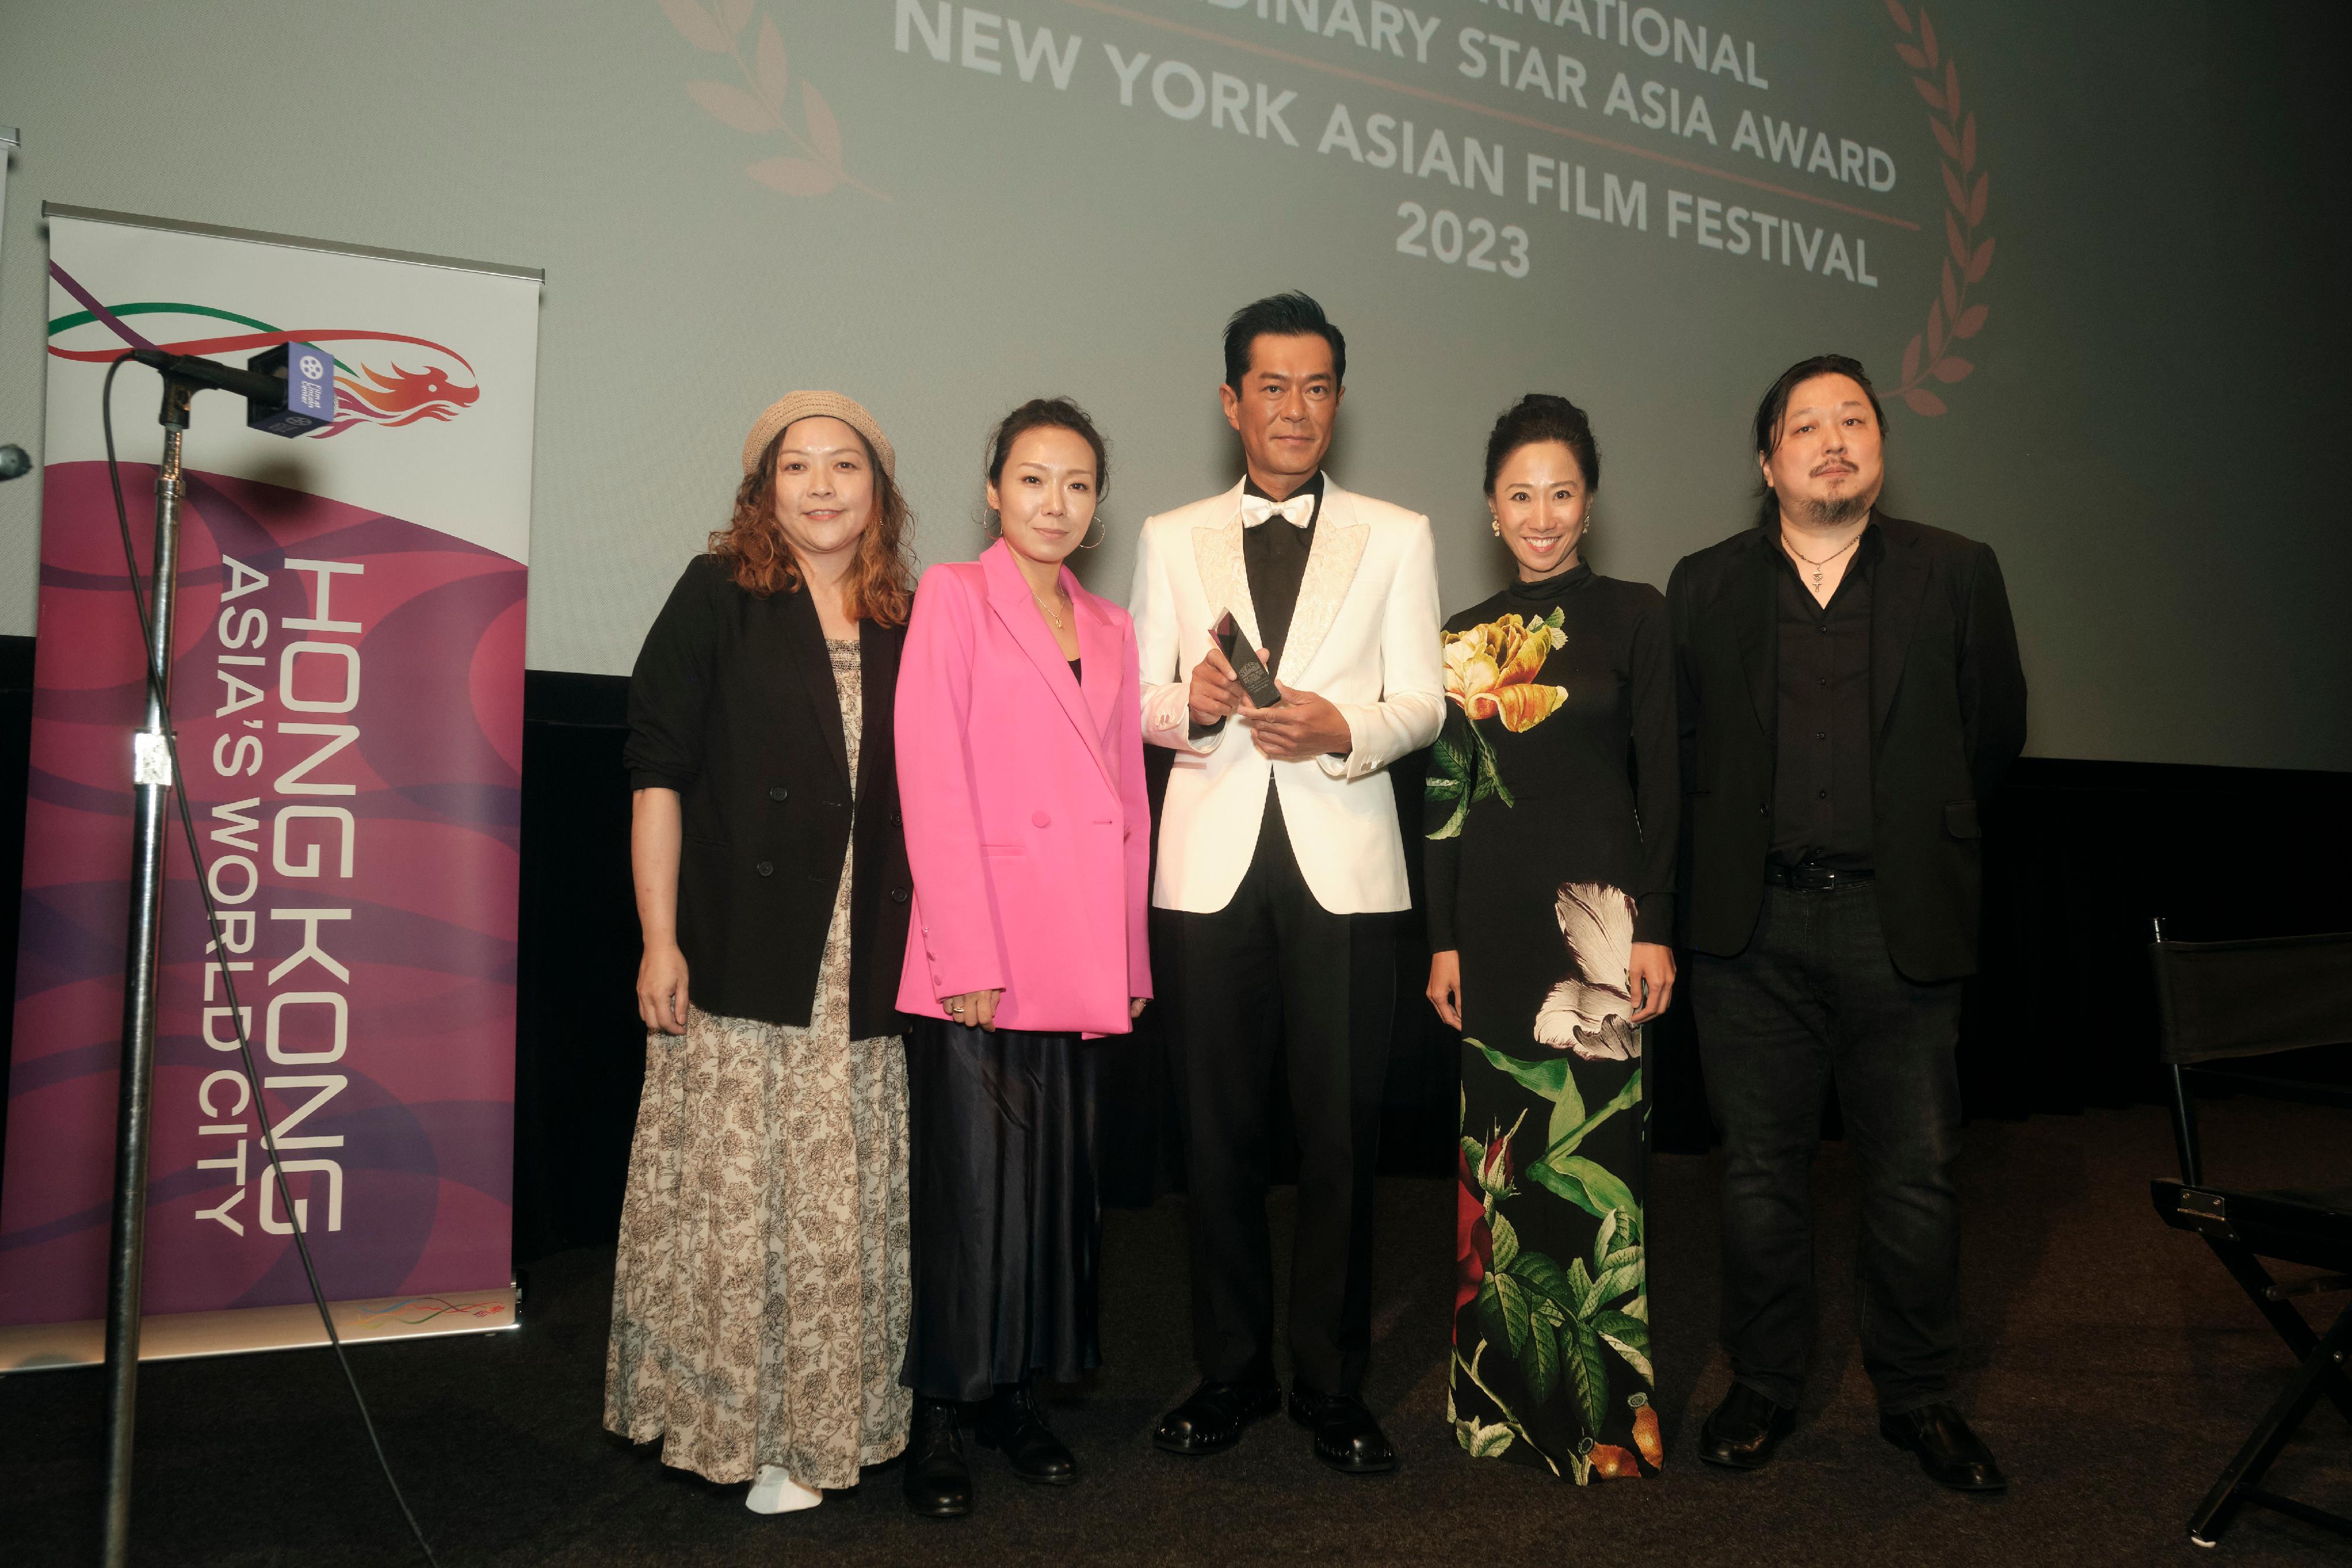 香港巨星古天樂於七月十九日（紐約時間）獲紐約亞洲電影節頒發「亞洲影壇非凡貢獻大獎」，表揚他在香港和亞洲創意工業的非凡成就。圖示香港駐紐約經濟貿易辦事處處長聶繼恩（右二）與古天樂（中）、紐約亞洲電影節執行總監Samuel Jamier（右一）、《送院途中》導演卓韻芝 （左二）和監製廖婉虹 （左一）於頒奬典禮合照。